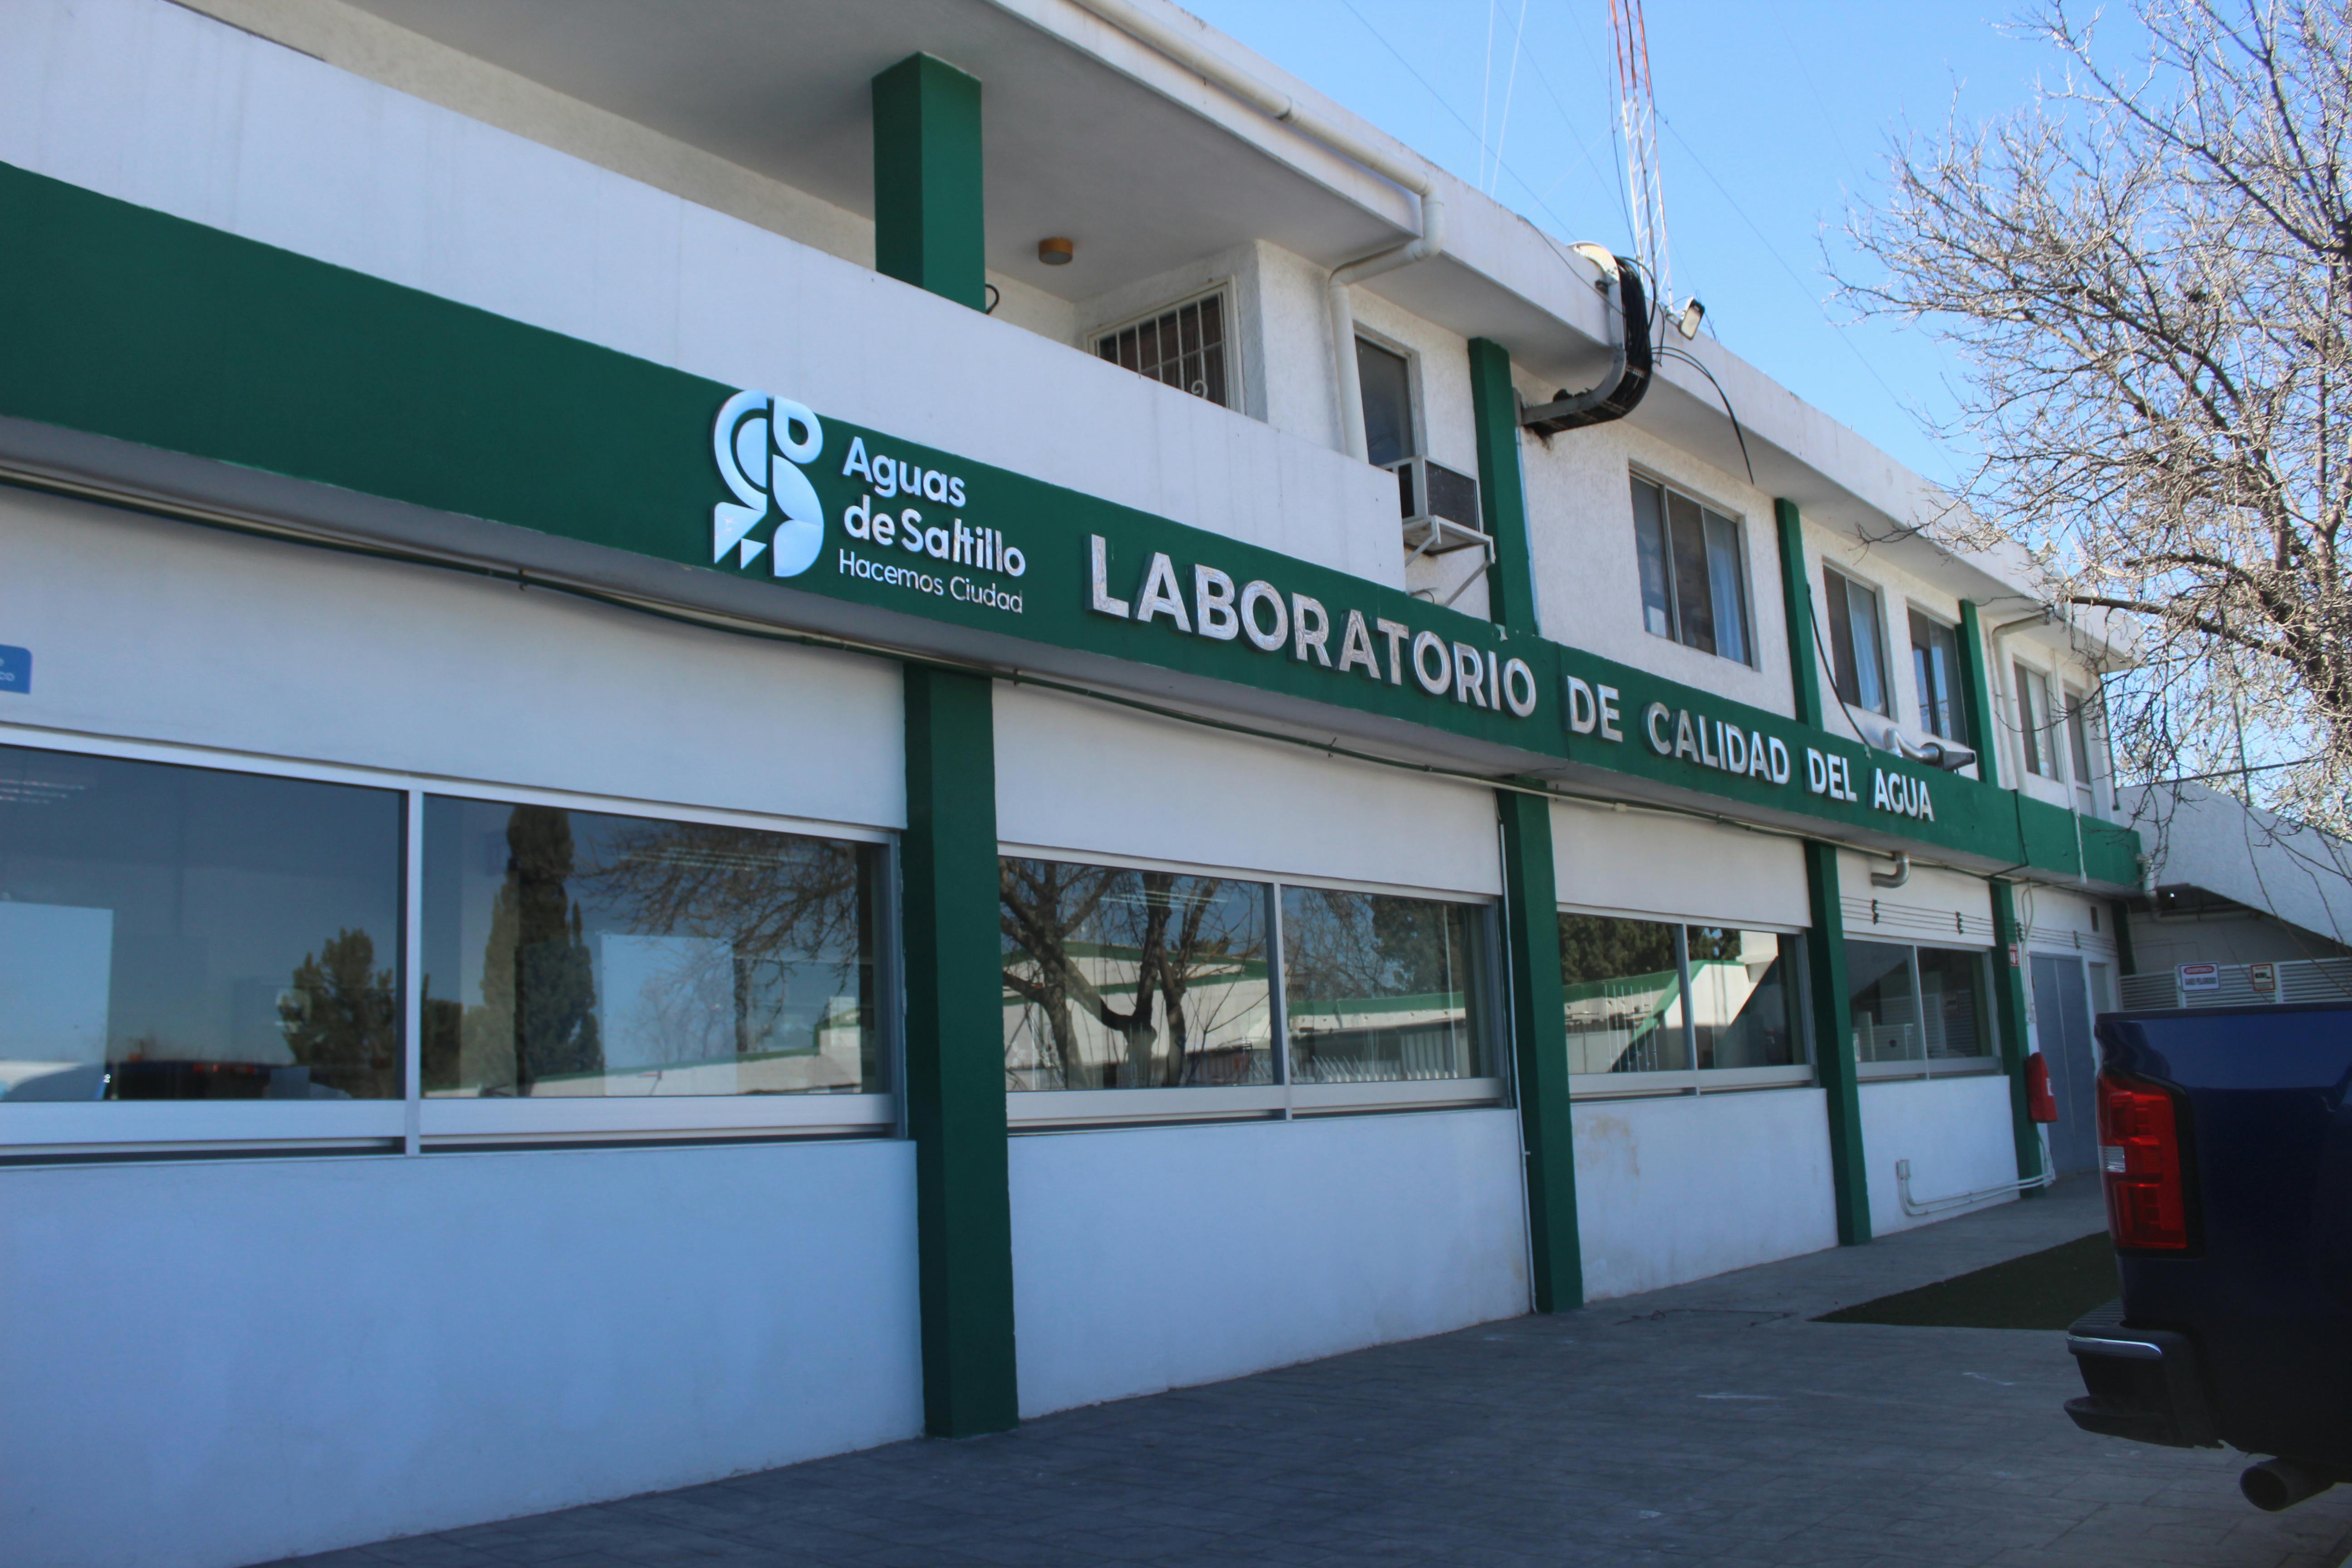 Laboratorio de Calidad del Agua. propiedad de AgSal. Autora: Lucía Pérez Paz